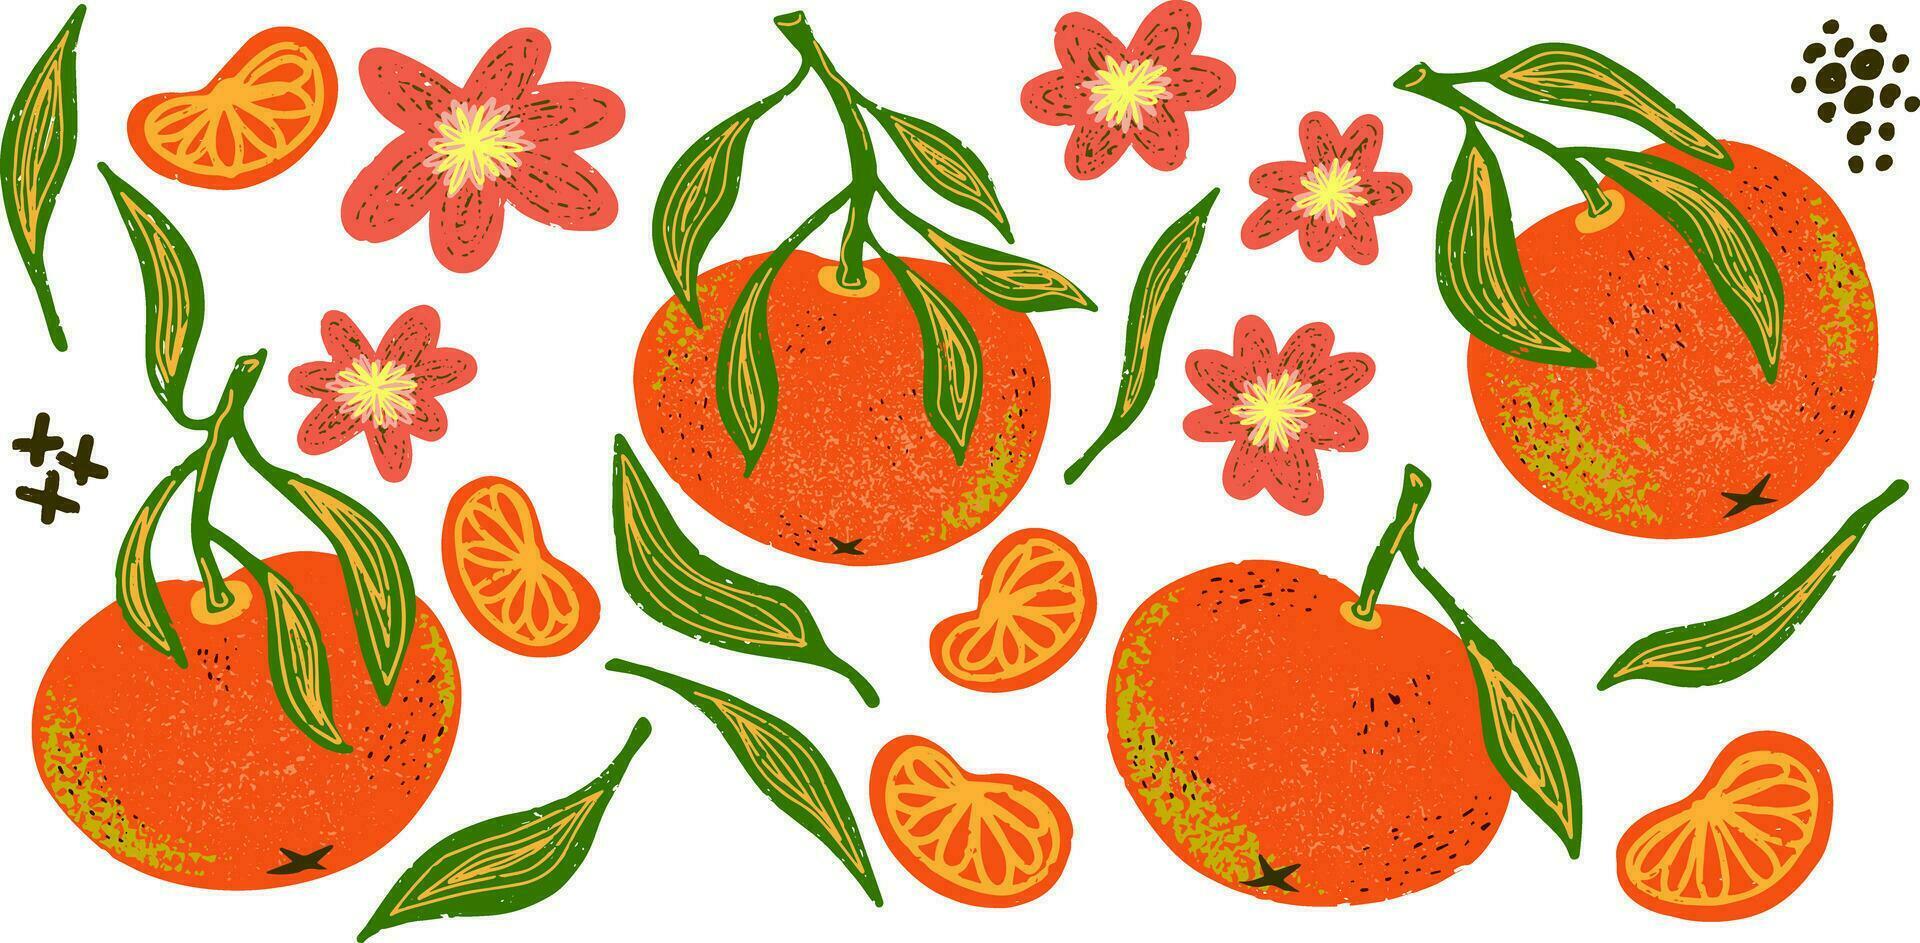 en grupp av apelsiner och blommor är visad vektor